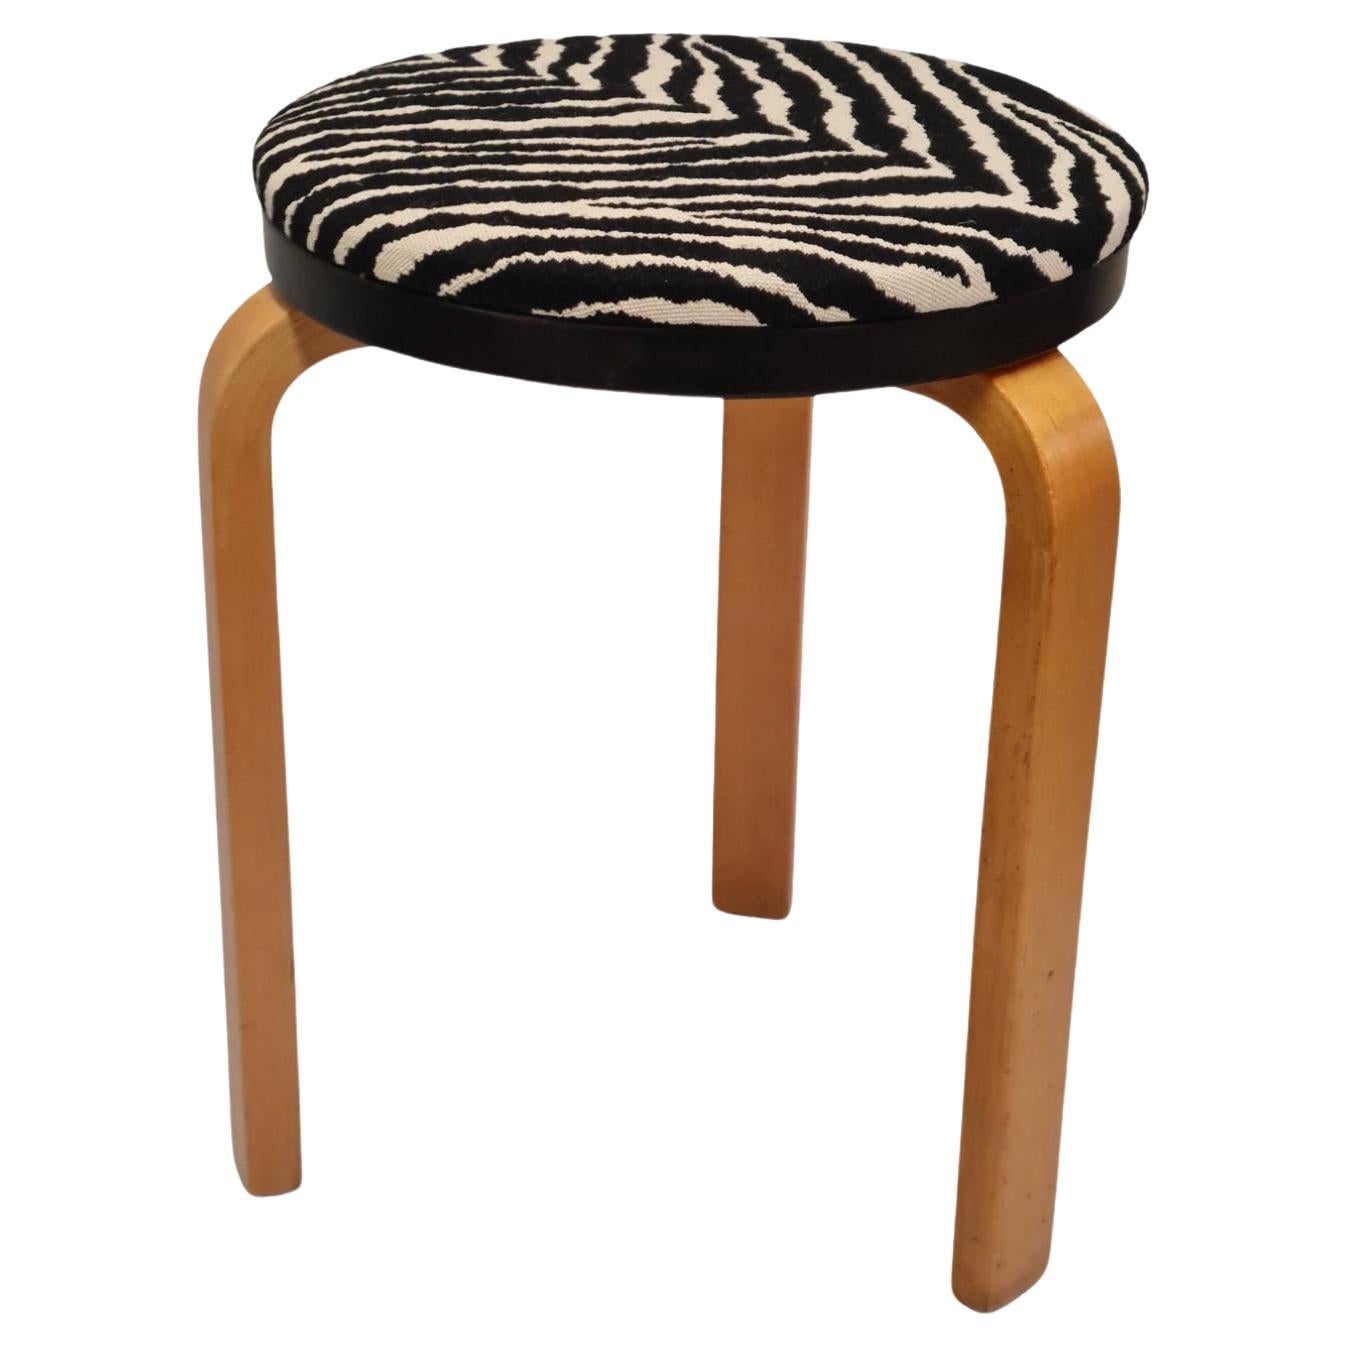 Aalto "double-decker" zebra stool